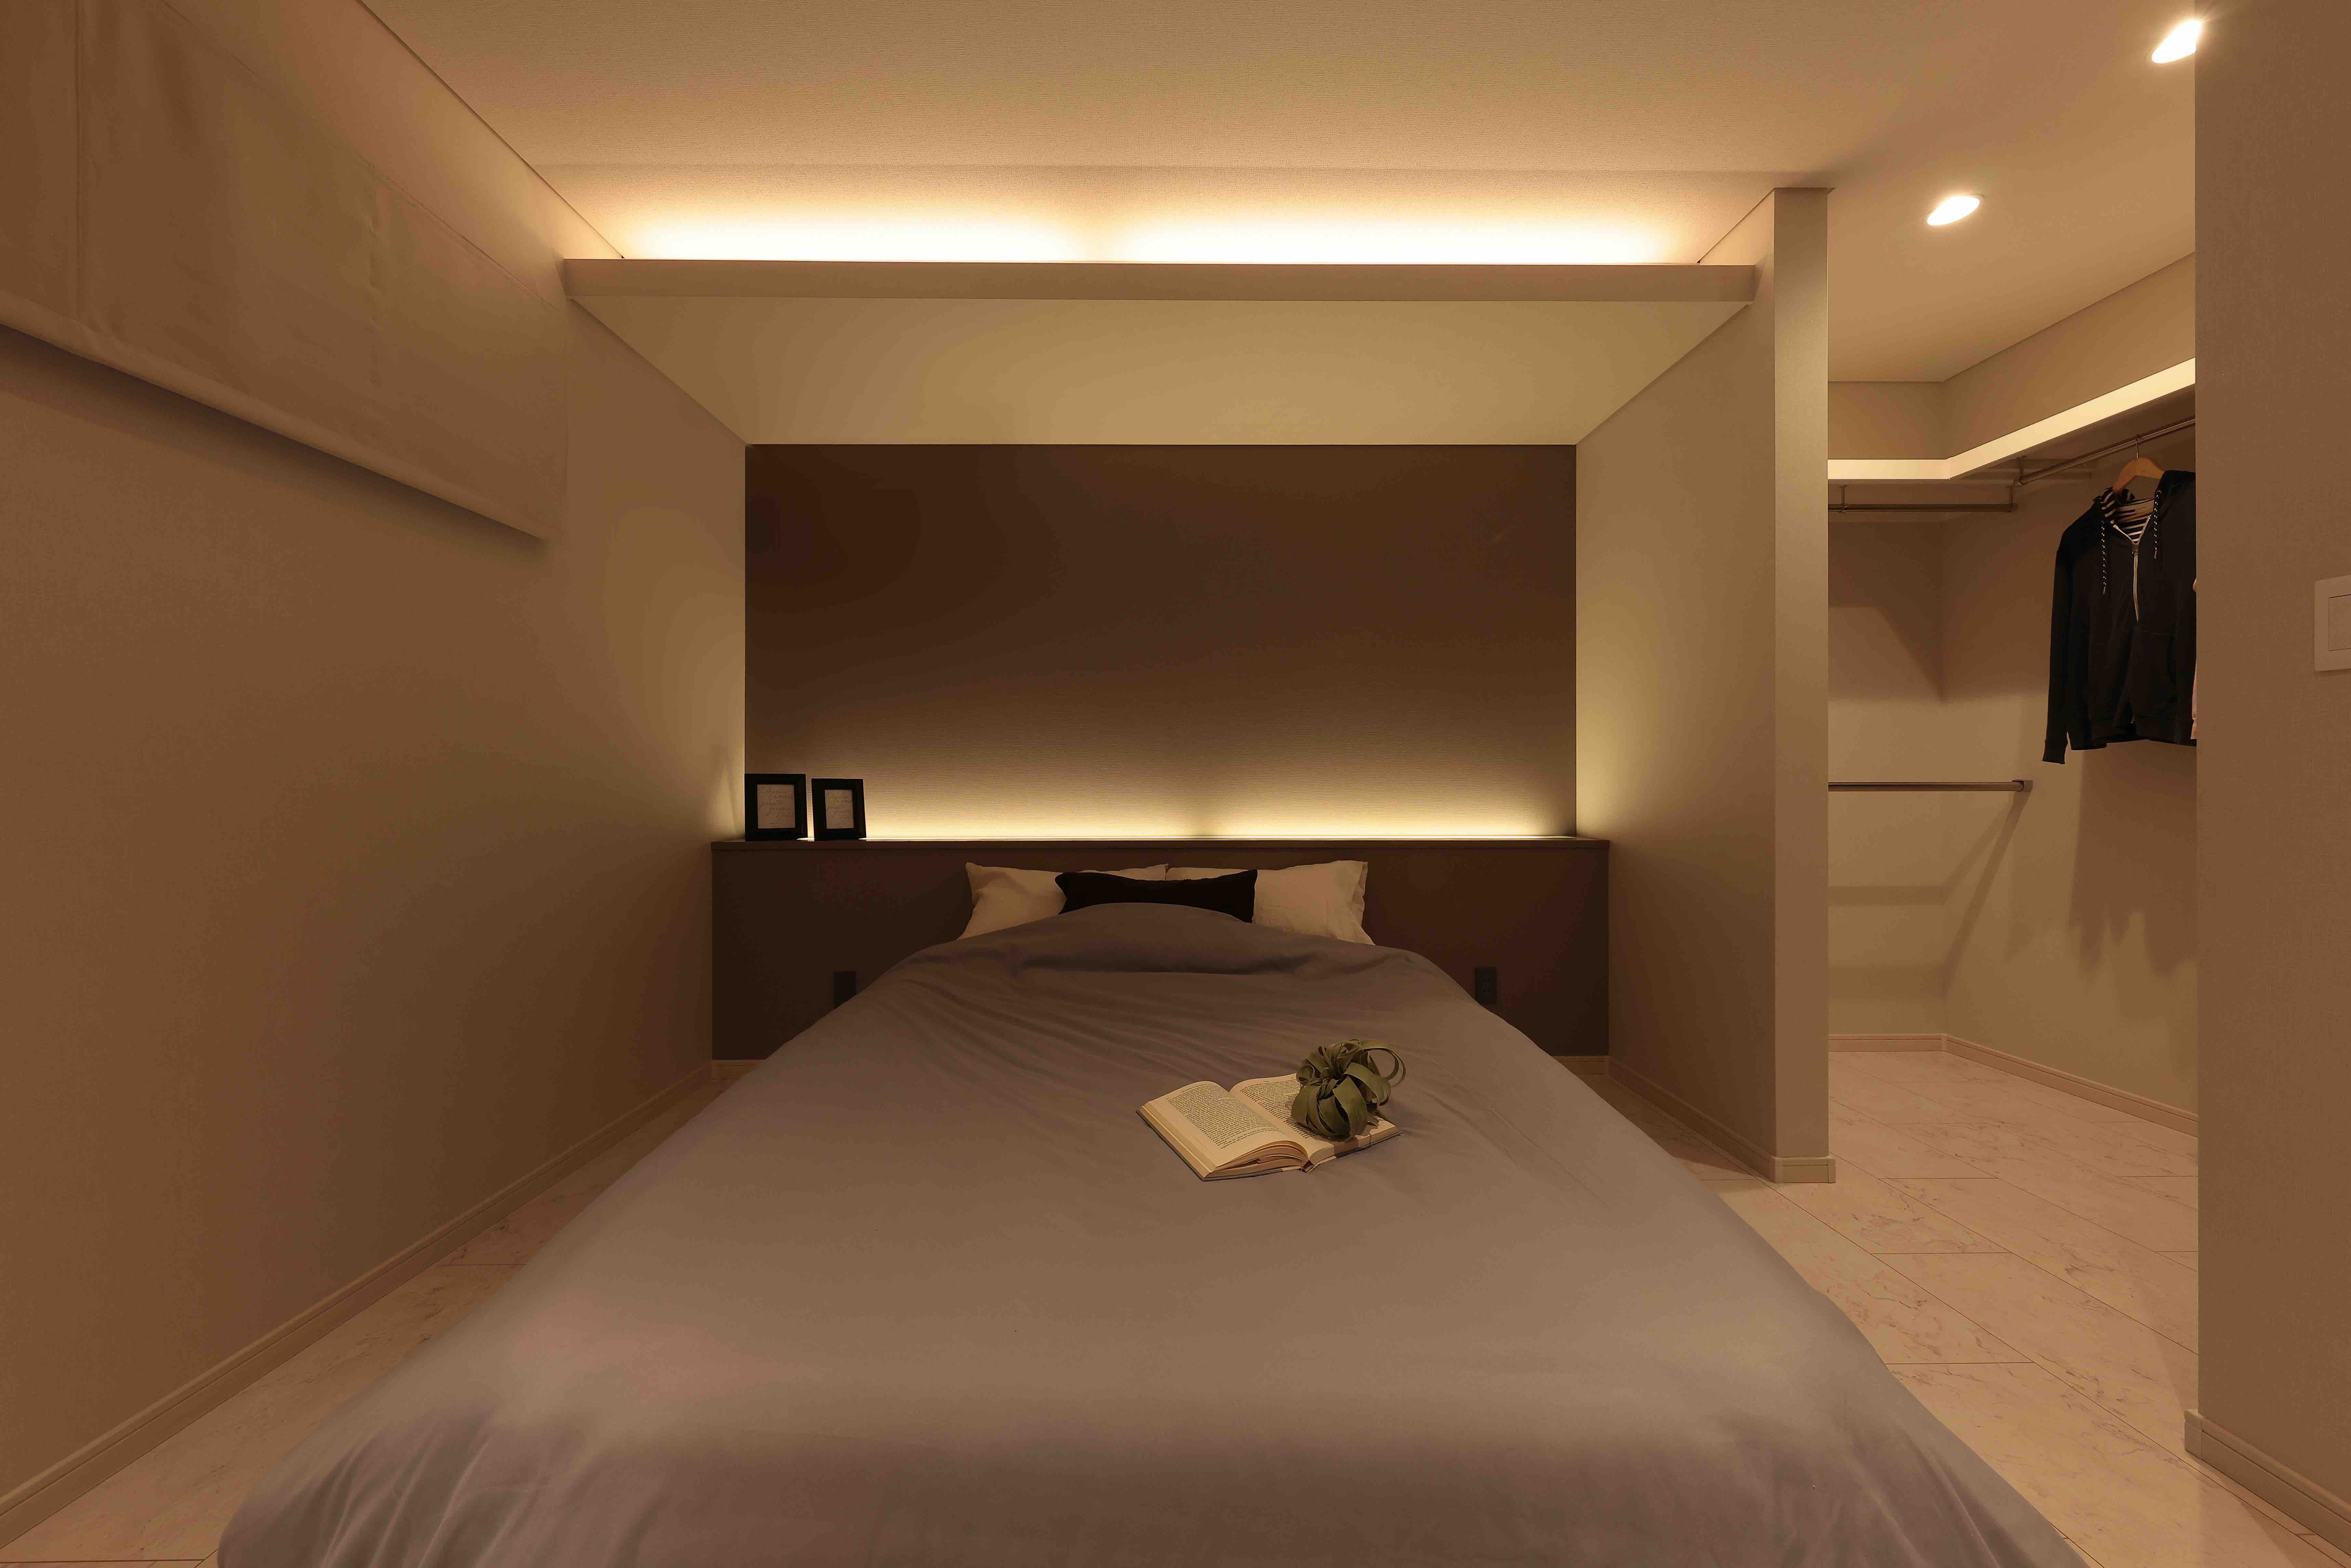 自然な眠りへと誘う間接照明が魅力的な寝室